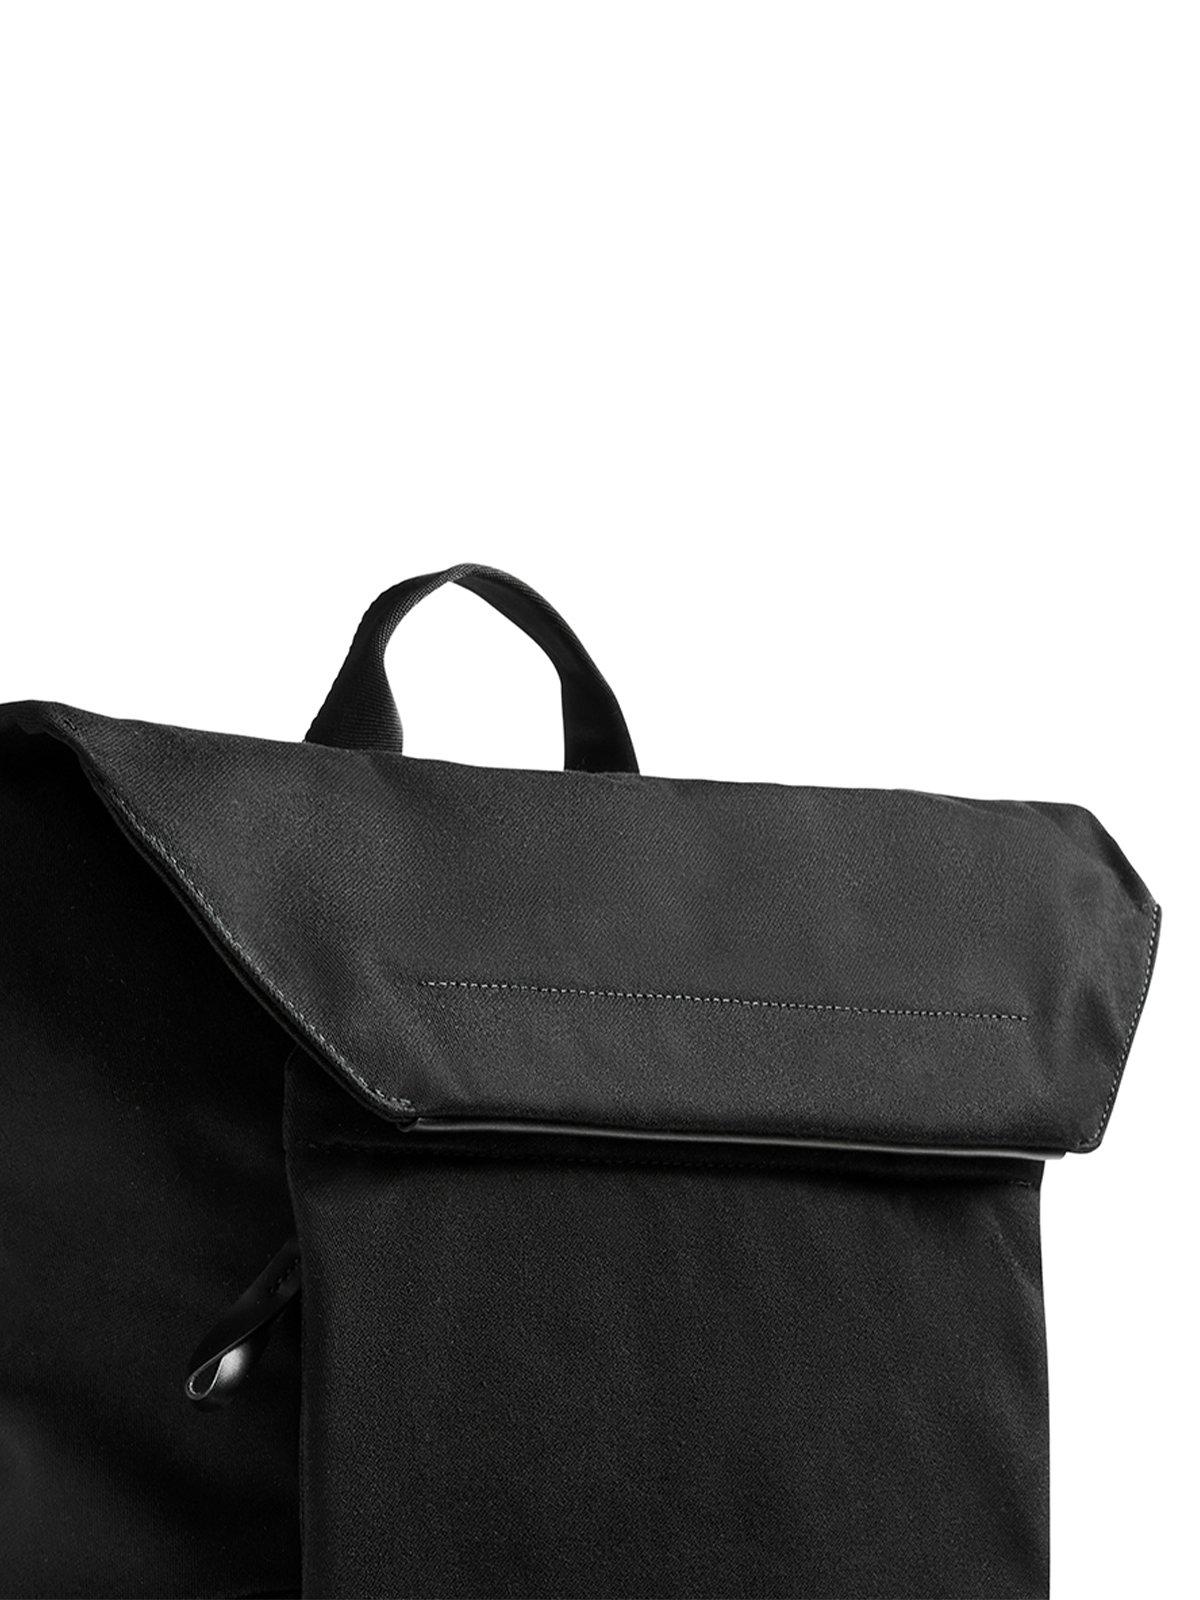 Bellroy Melbourne Backpack Melbourne Black